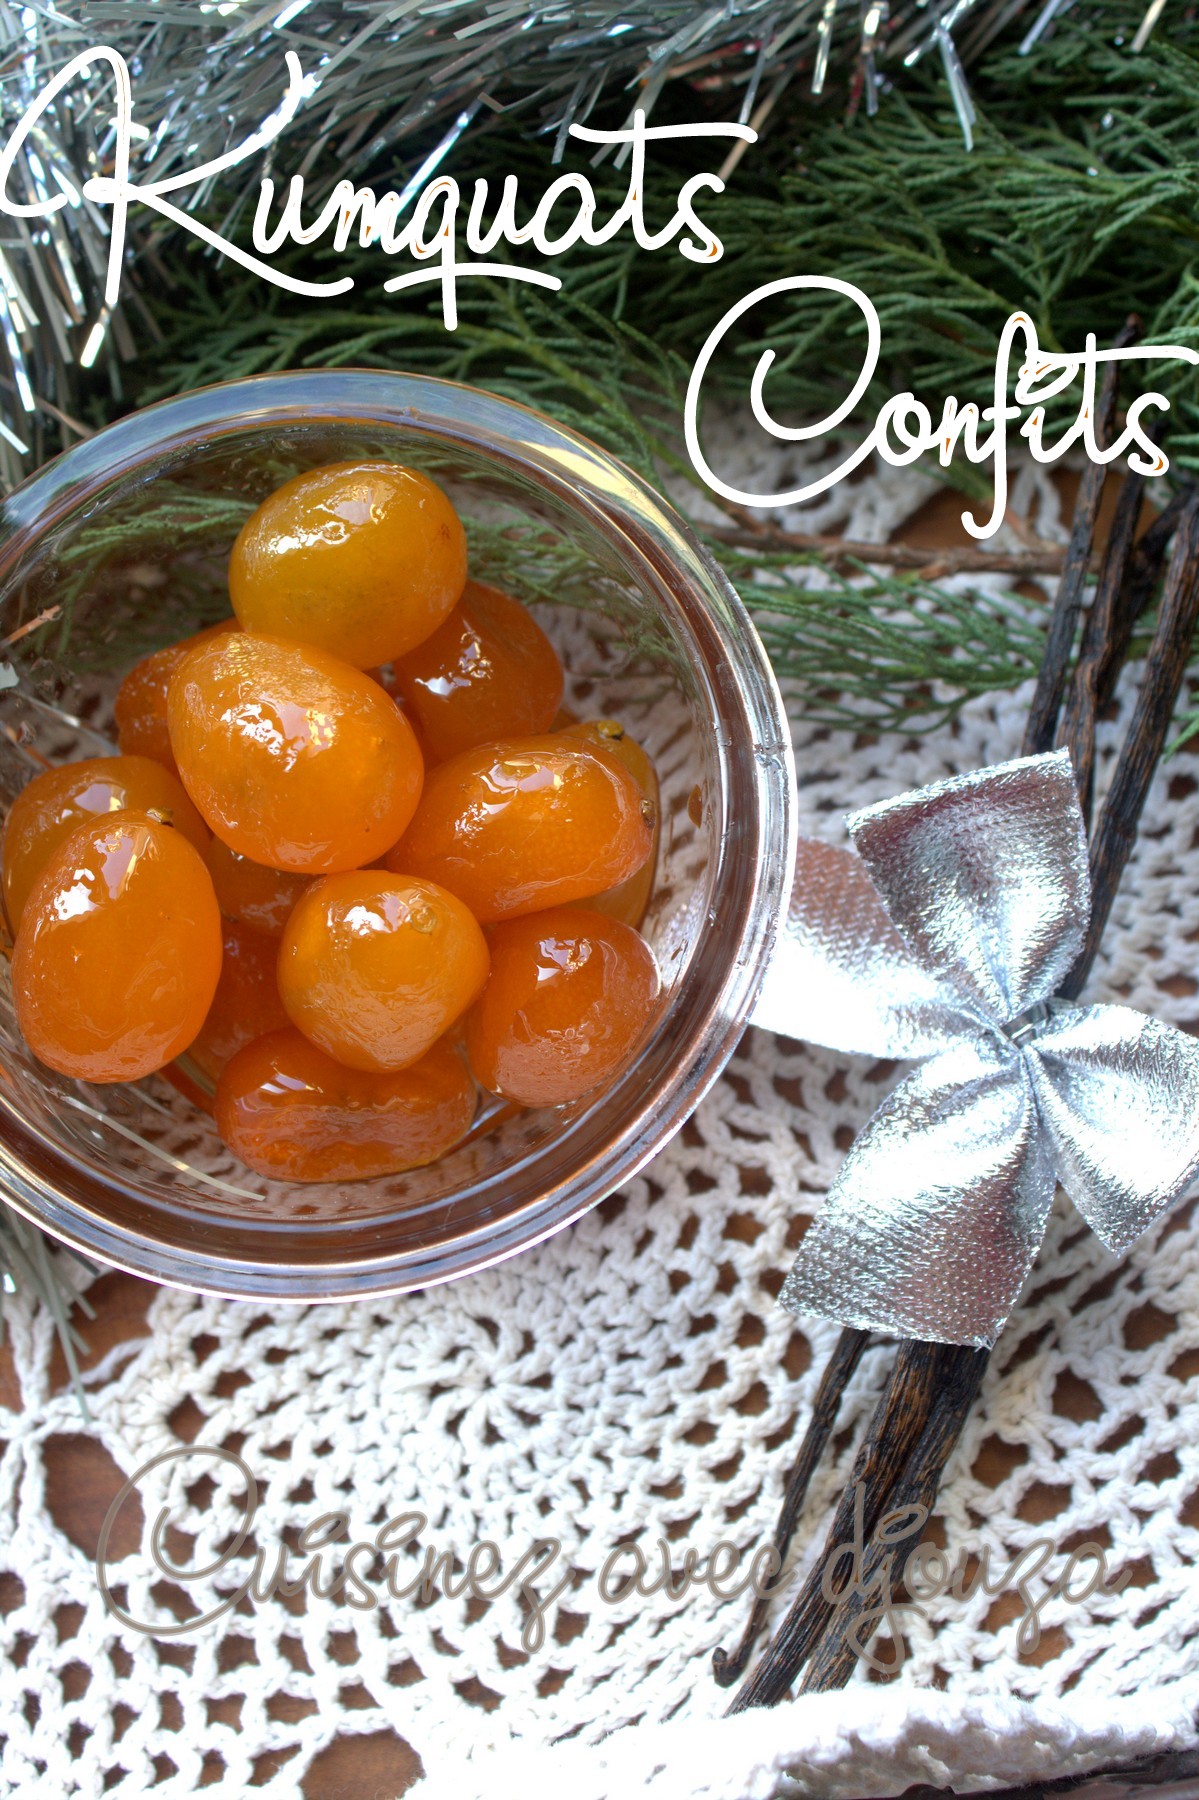 Kumquats confits, recette maison rapide | La cuisine de Djouza